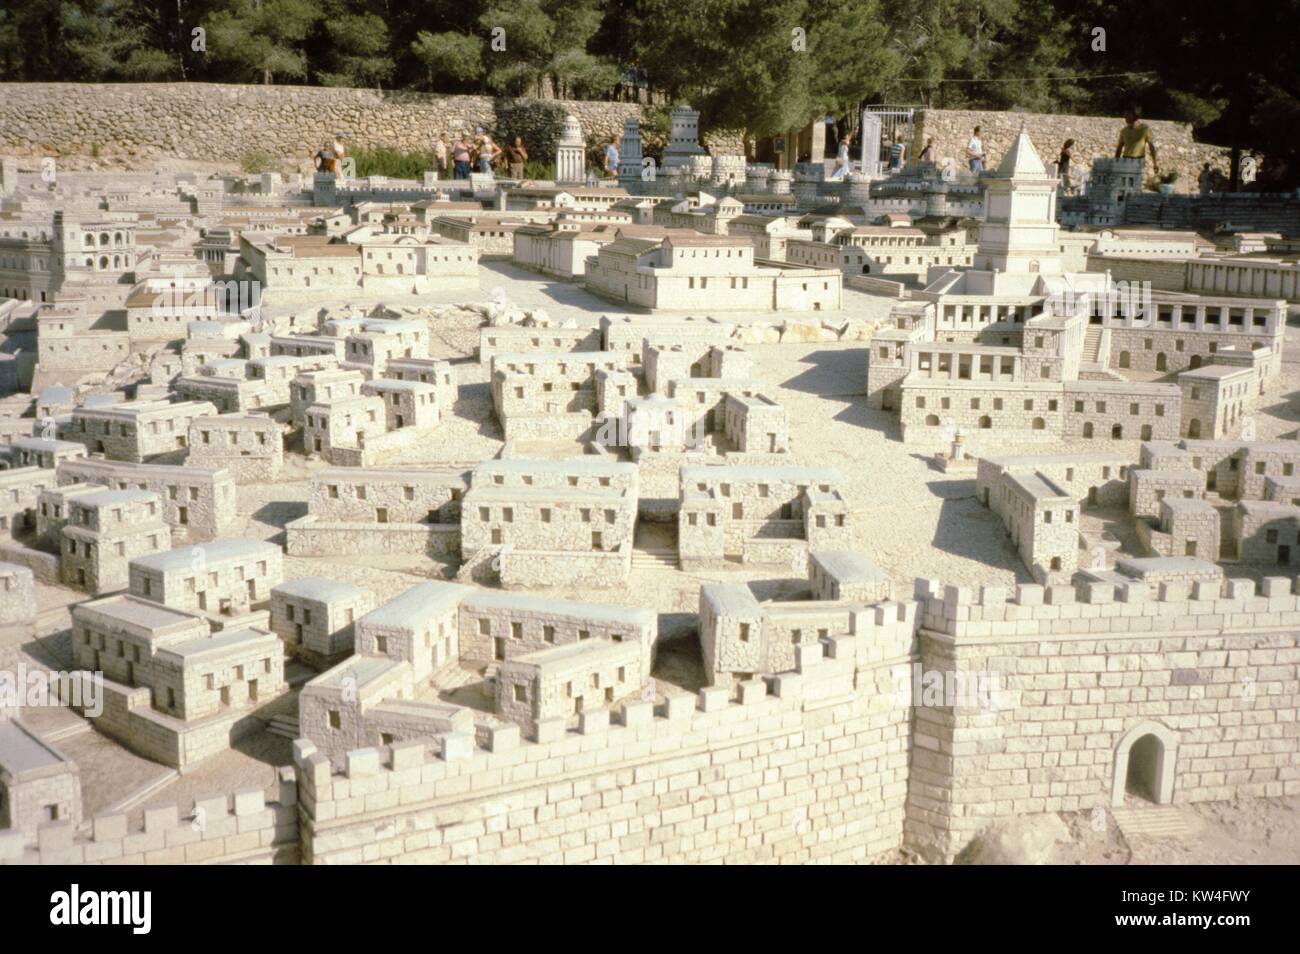 Holyland Modello di Gerusalemme, un modello in scala della città di Gerusalemme come sarebbe apparso in tempi biblici, Gerusalemme, Israele, 1975. Foto Stock